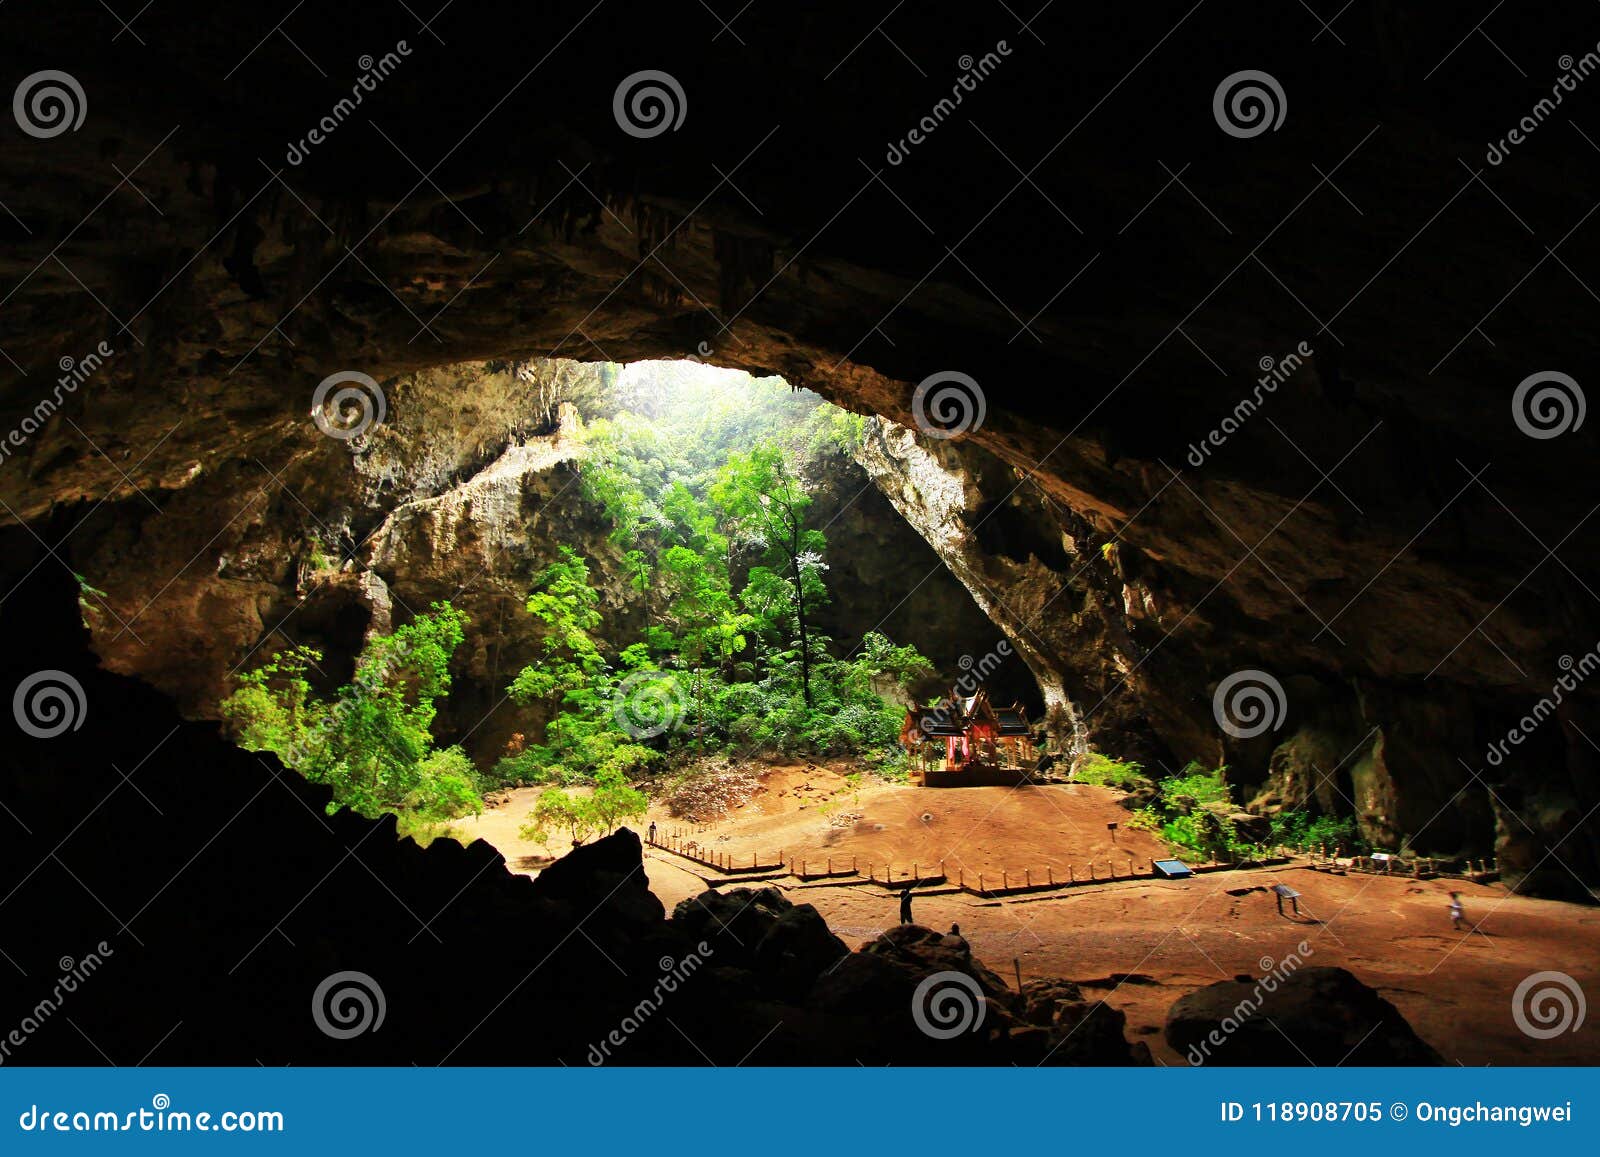 khuha kharuehat pavilion, phraya nakhon cave, khao sam roi yot national park, thailand